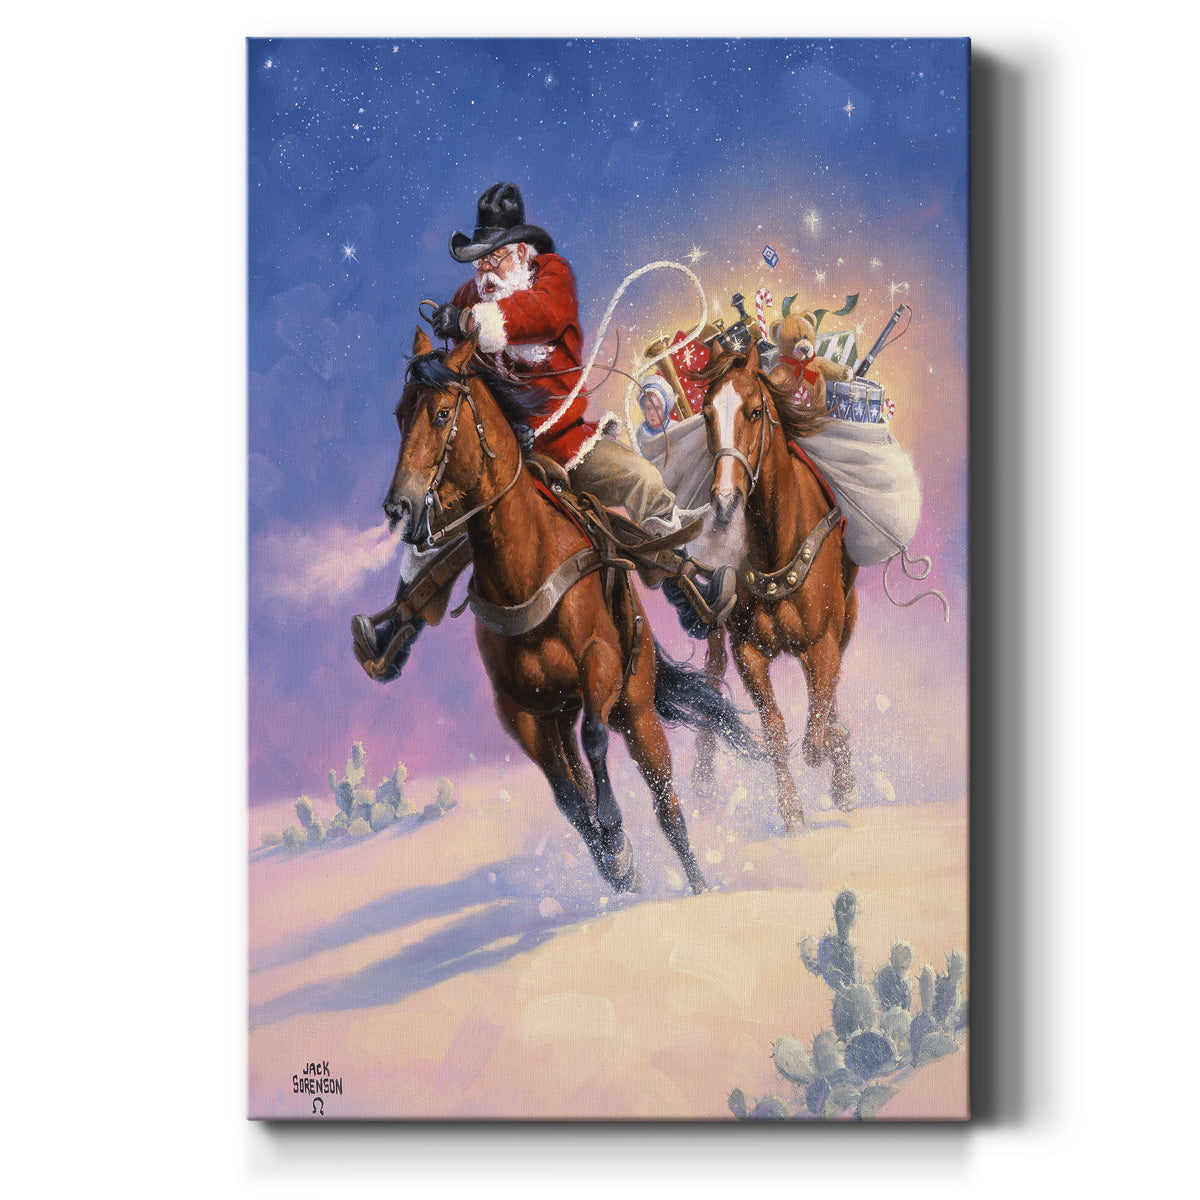 Santa's Big Ride - Gallery Wrapped Canvas